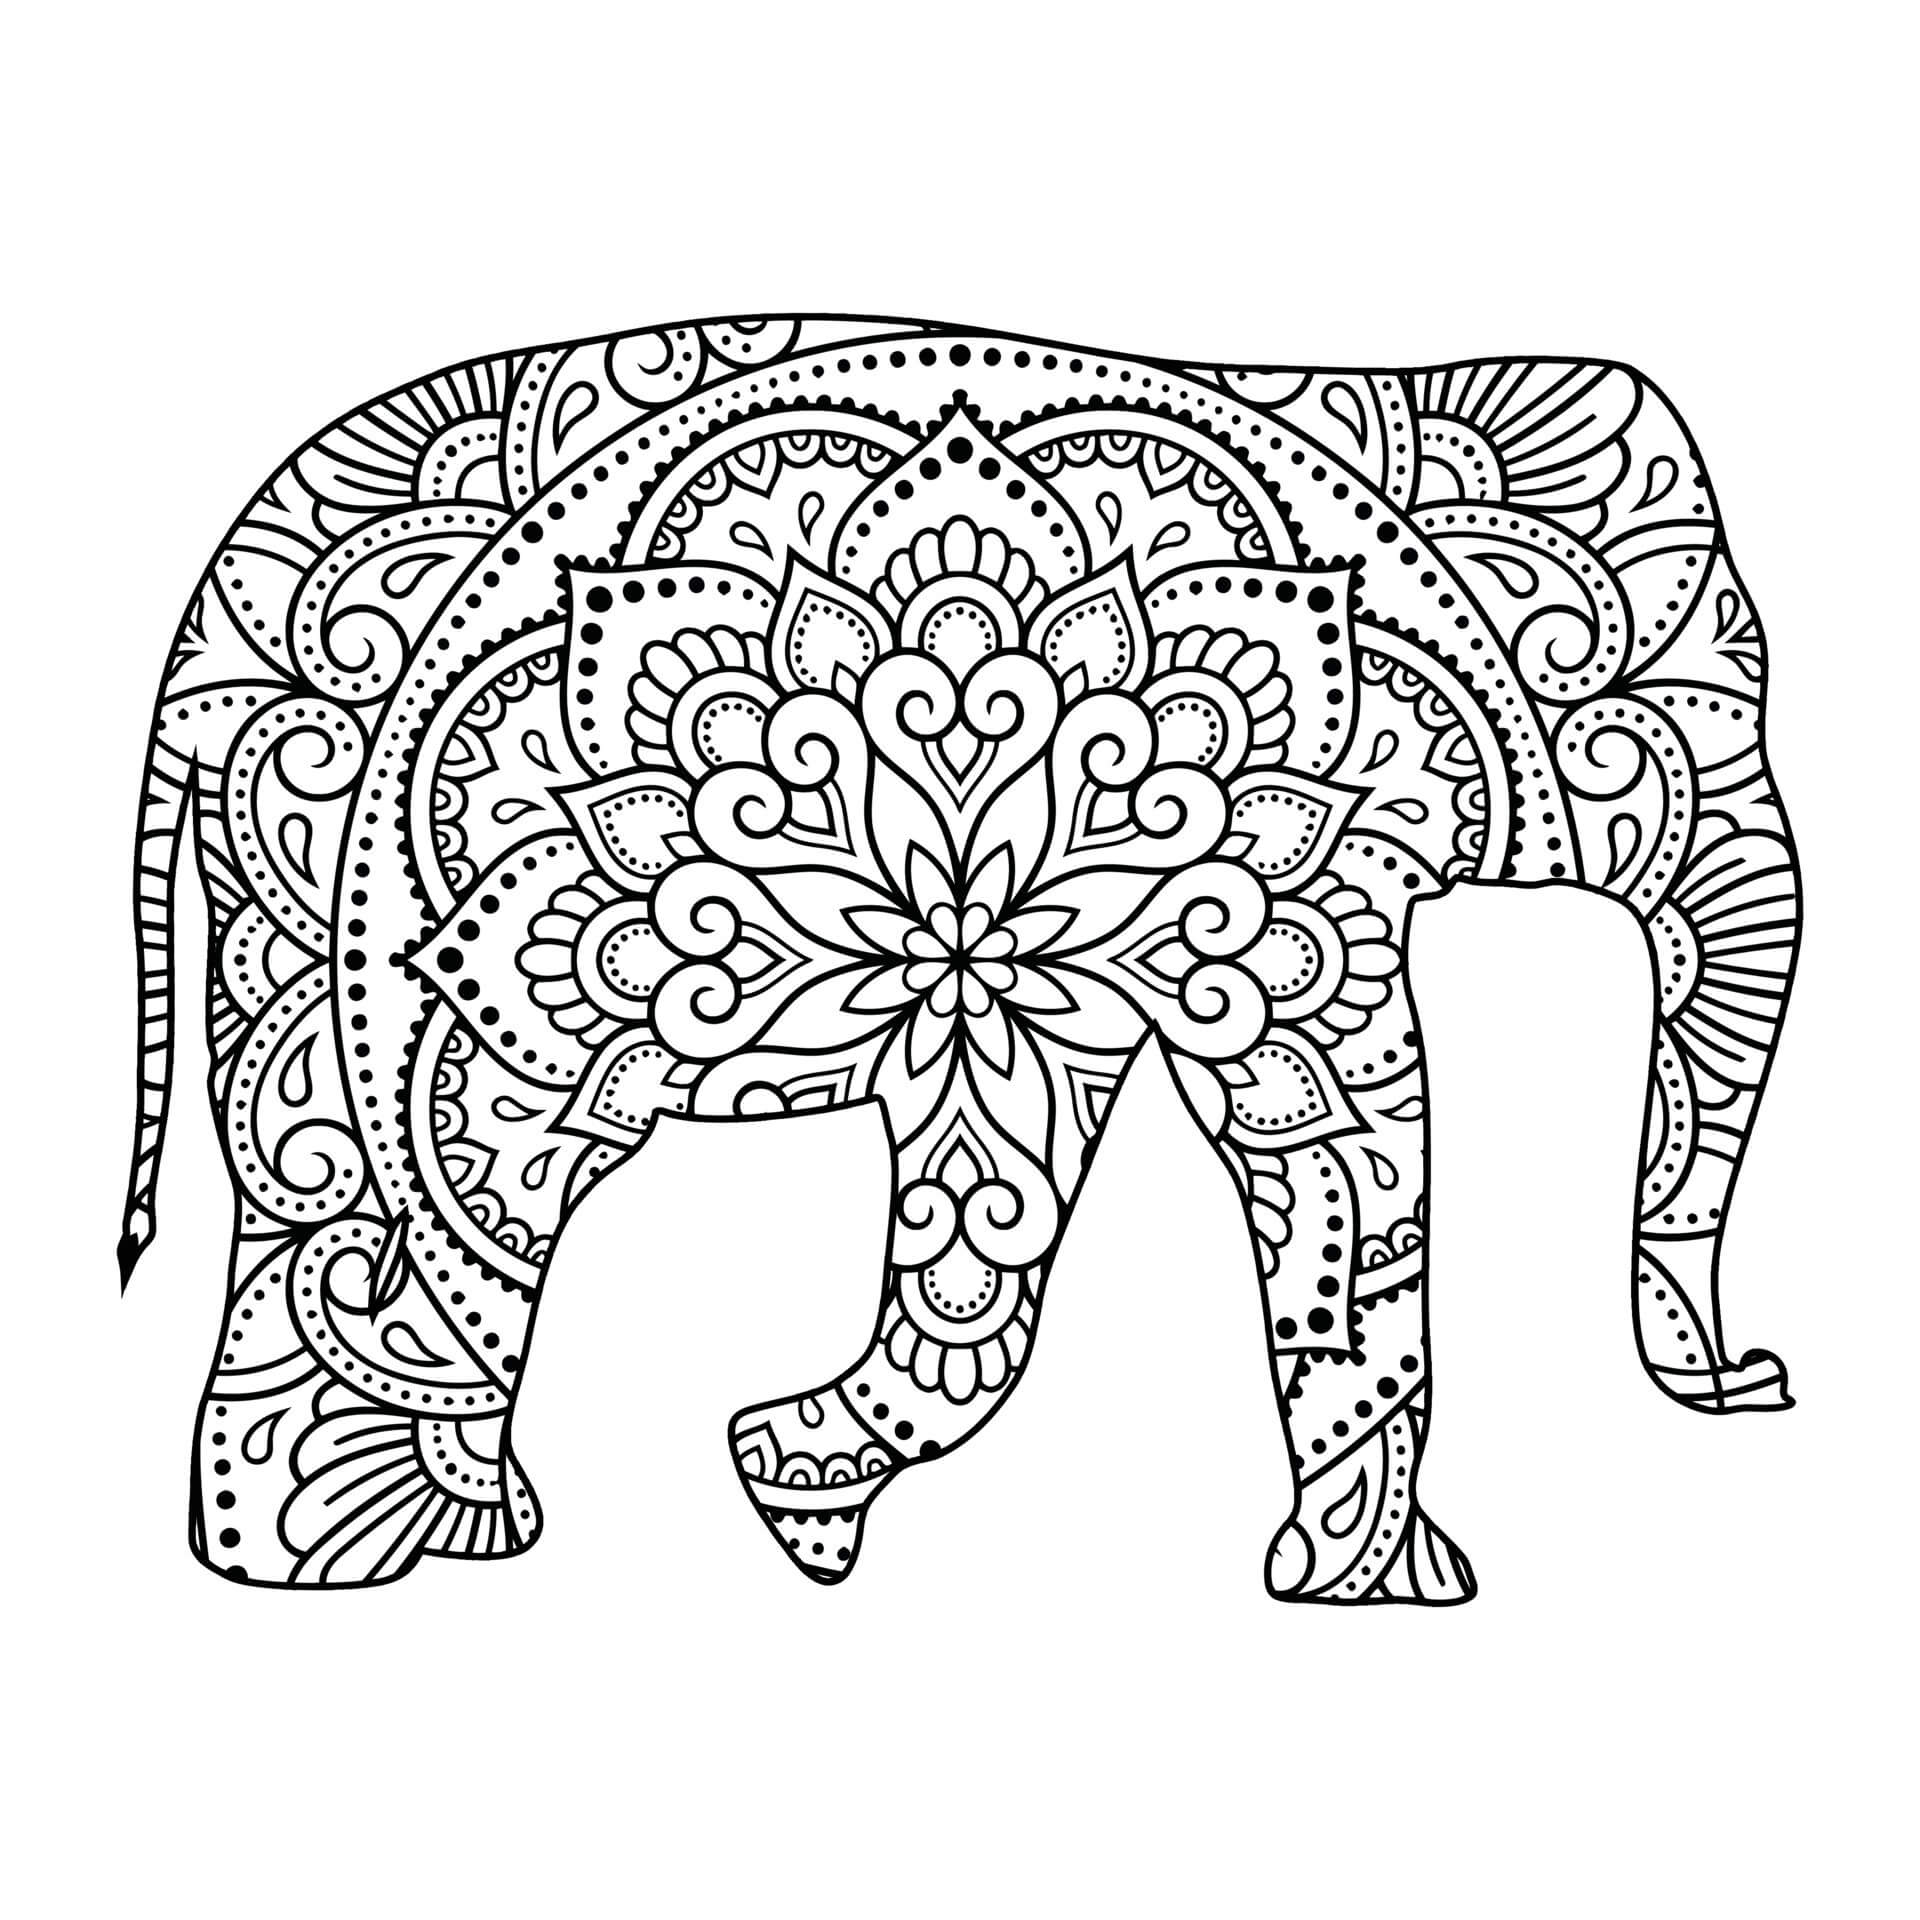 Mandala Elephant Coloring Page - Sheet 6 Mandalas